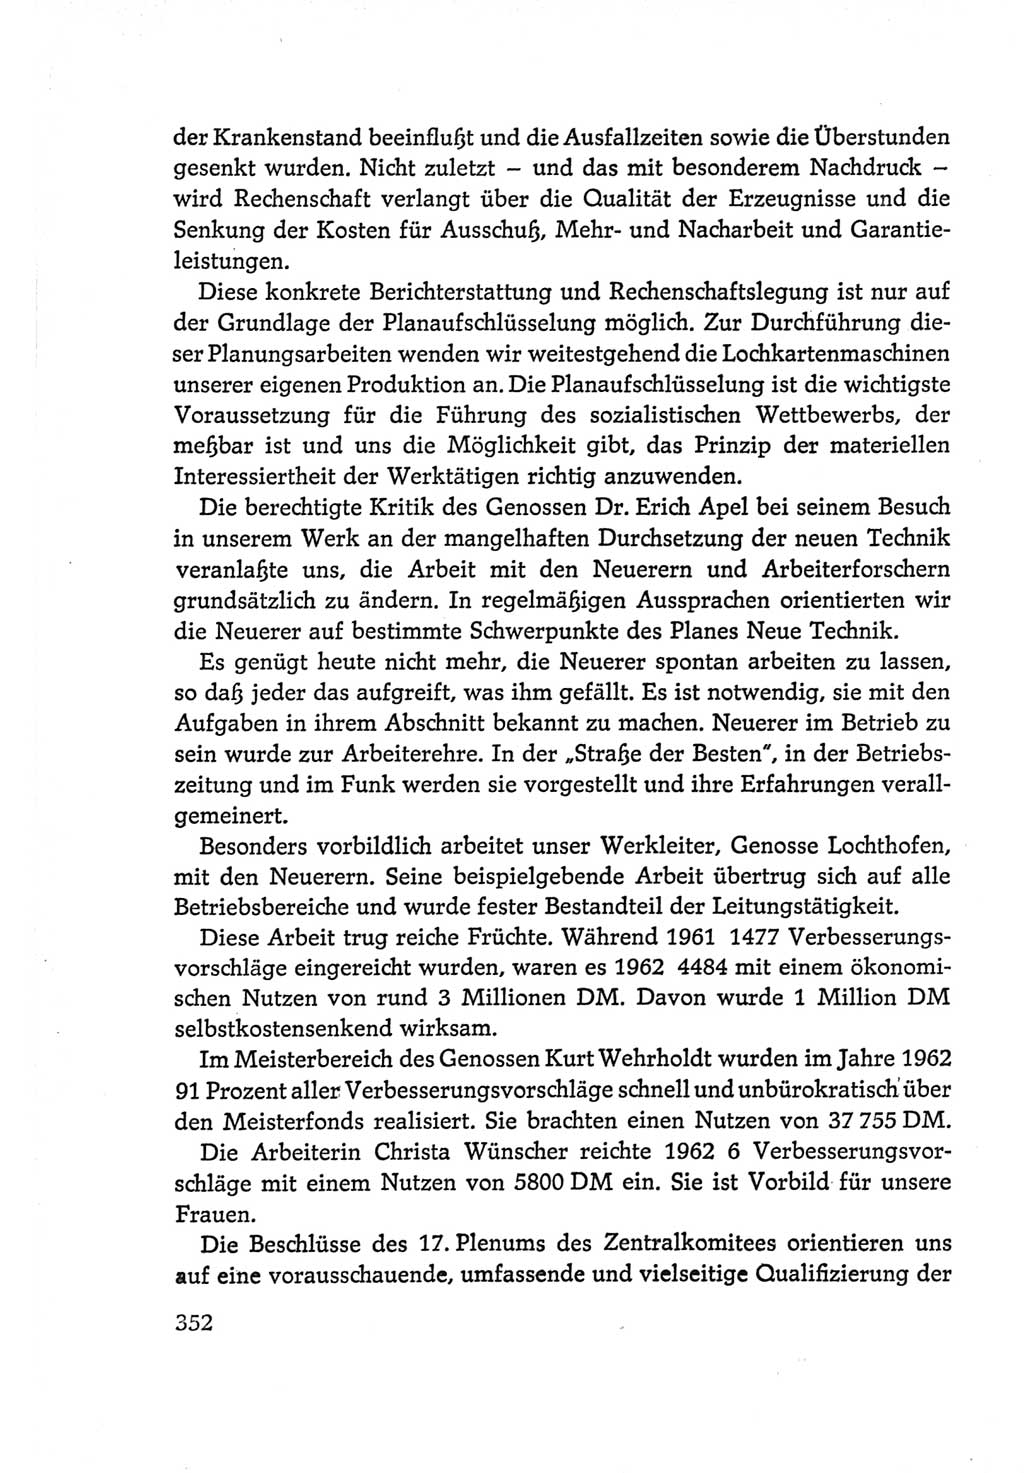 Protokoll der Verhandlungen des Ⅵ. Parteitages der Sozialistischen Einheitspartei Deutschlands (SED) [Deutsche Demokratische Republik (DDR)] 1963, Band Ⅰ, Seite 352 (Prot. Verh. Ⅵ. PT SED DDR 1963, Bd. Ⅰ, S. 352)